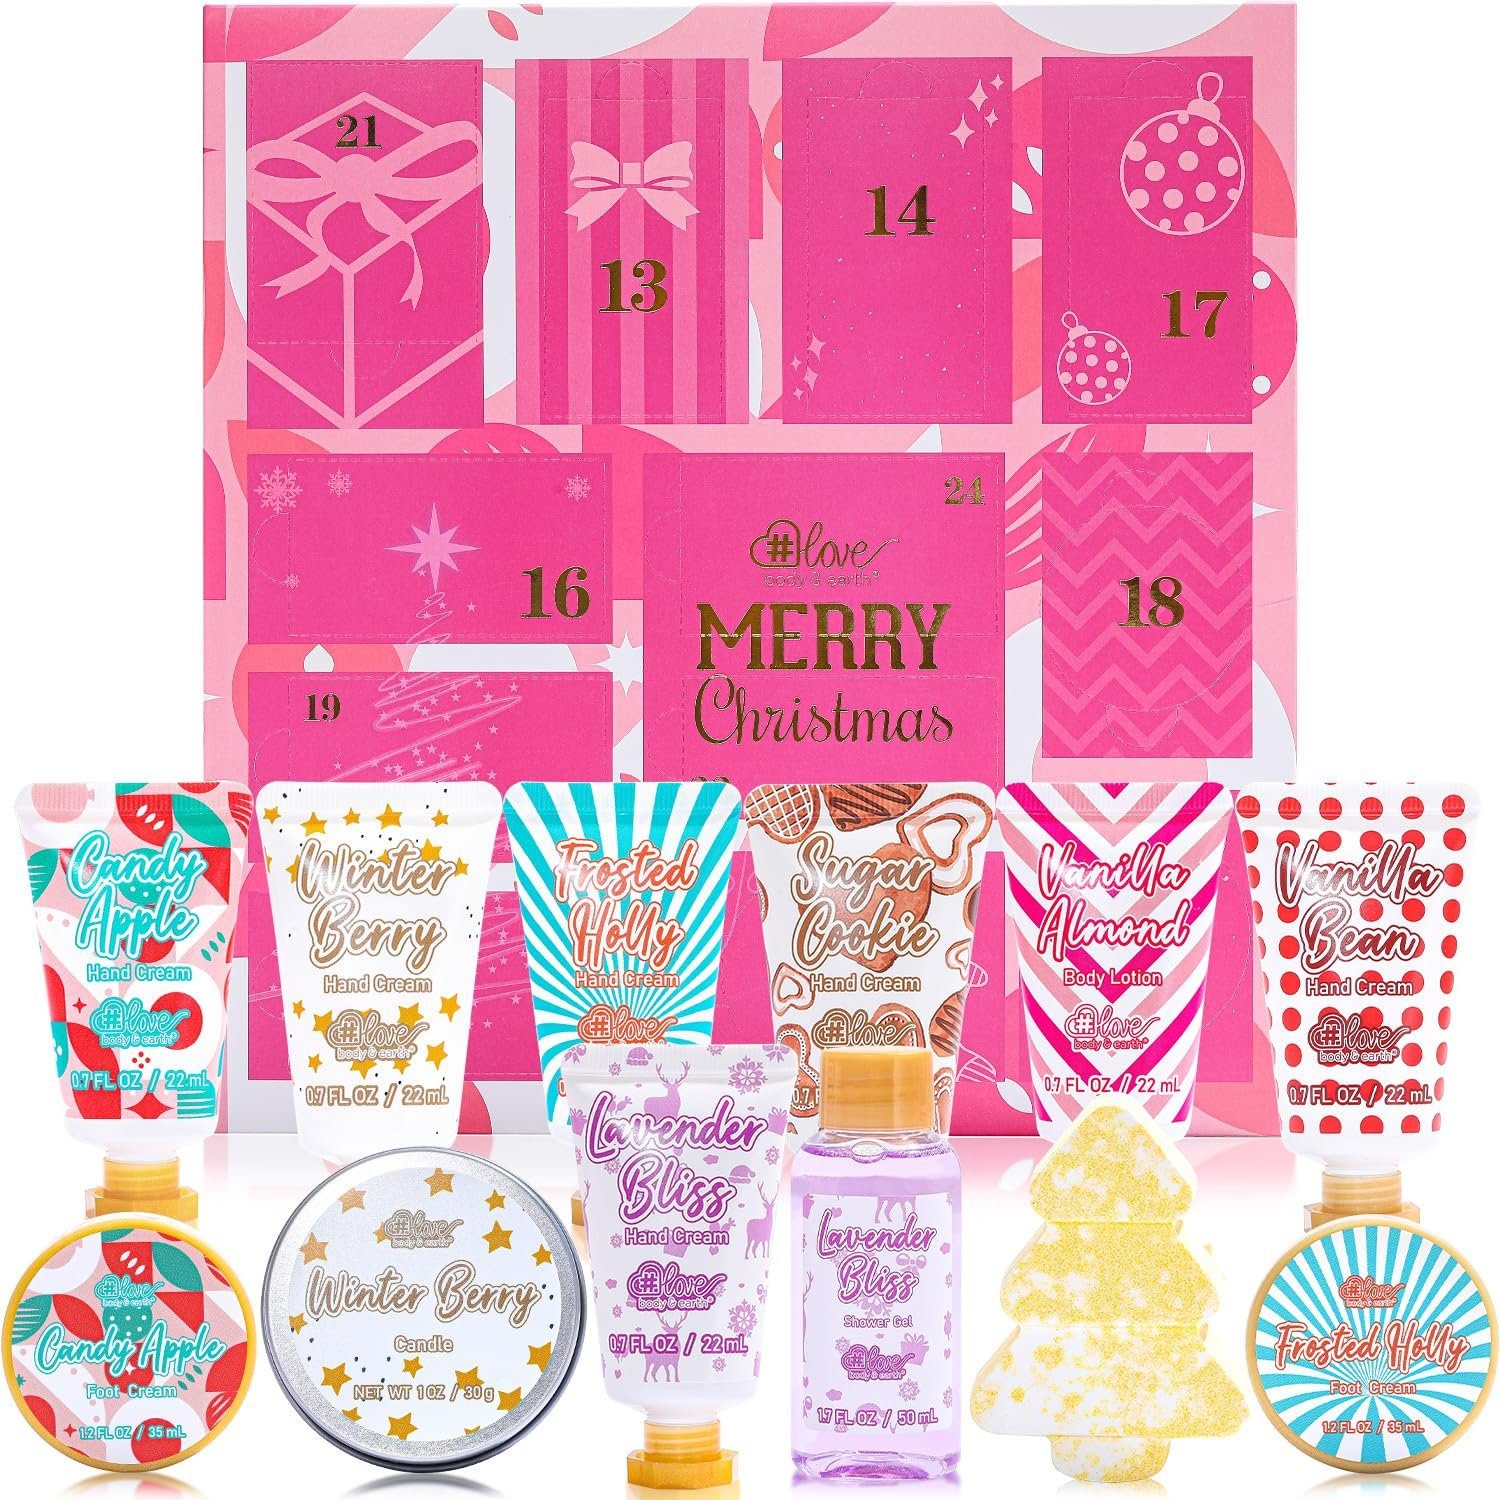 # Frauen,12pc Hand EARTH Weihnachtsgeschenke & LOVE für Cream Adventskalender, BODY Handcreme Box mit